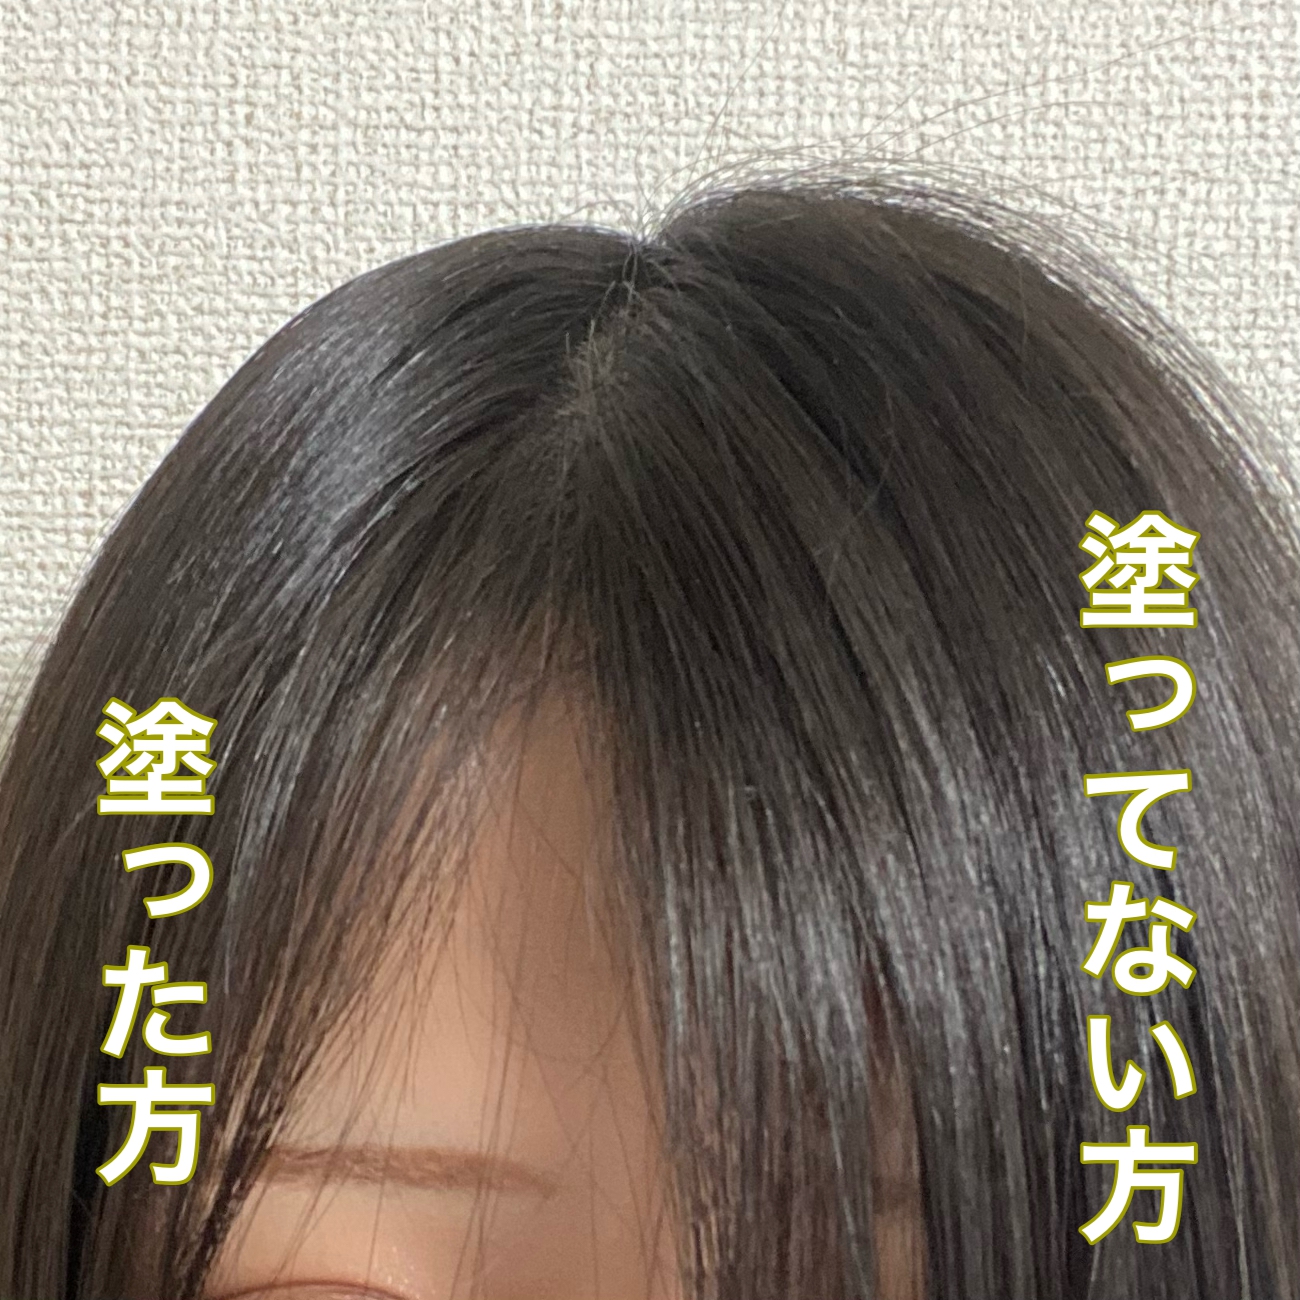 matomage(マトメージュ)まとめ髪スティック スーパーホールドを使ったyuri.kさんのクチコミ画像1